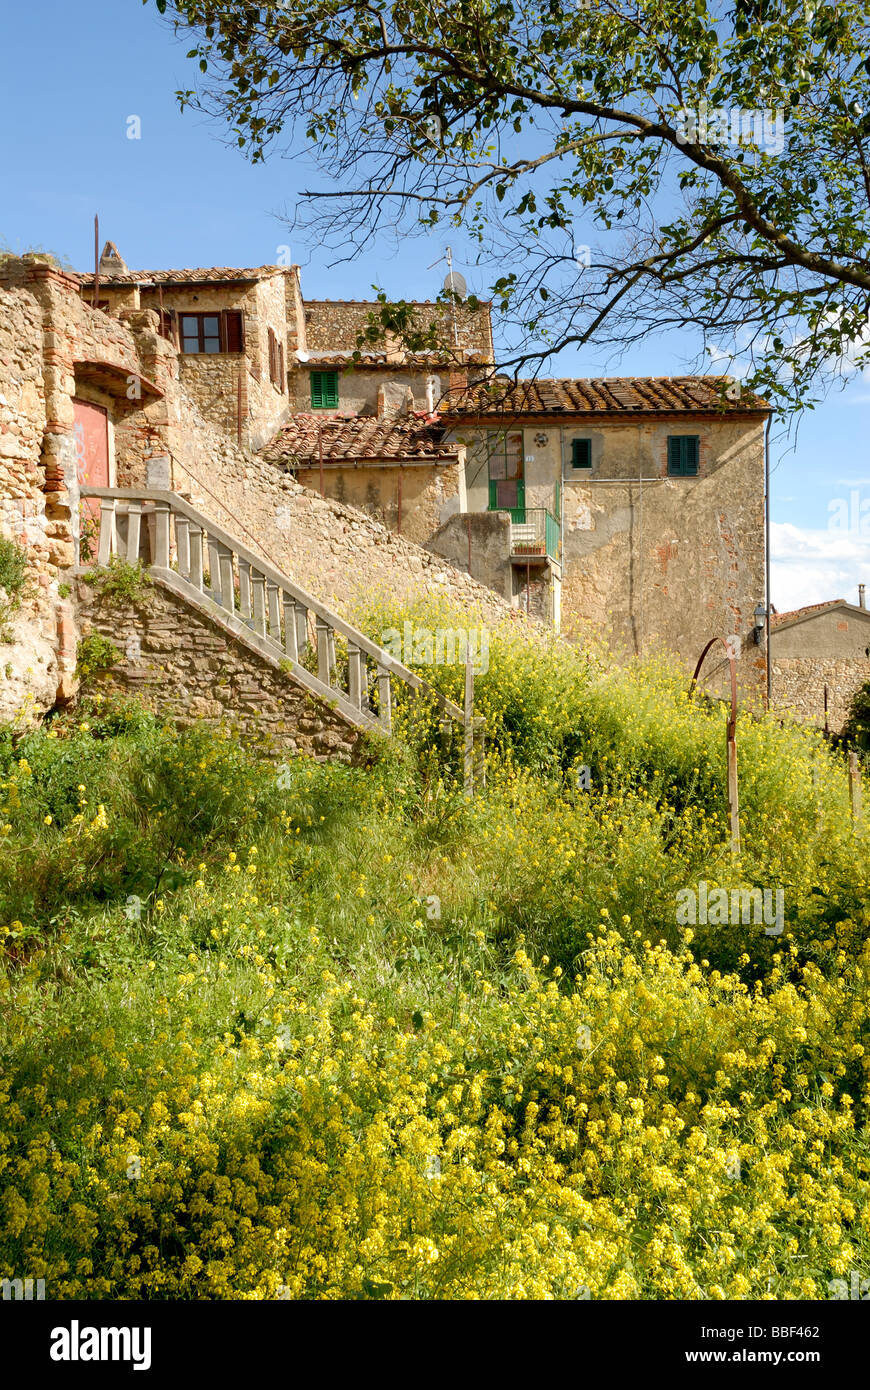 Toscane (Toscana) Italie - bâtiments avec des arbustes entourent alors que vue sur la ville médiévale Casale Marittimo Banque D'Images